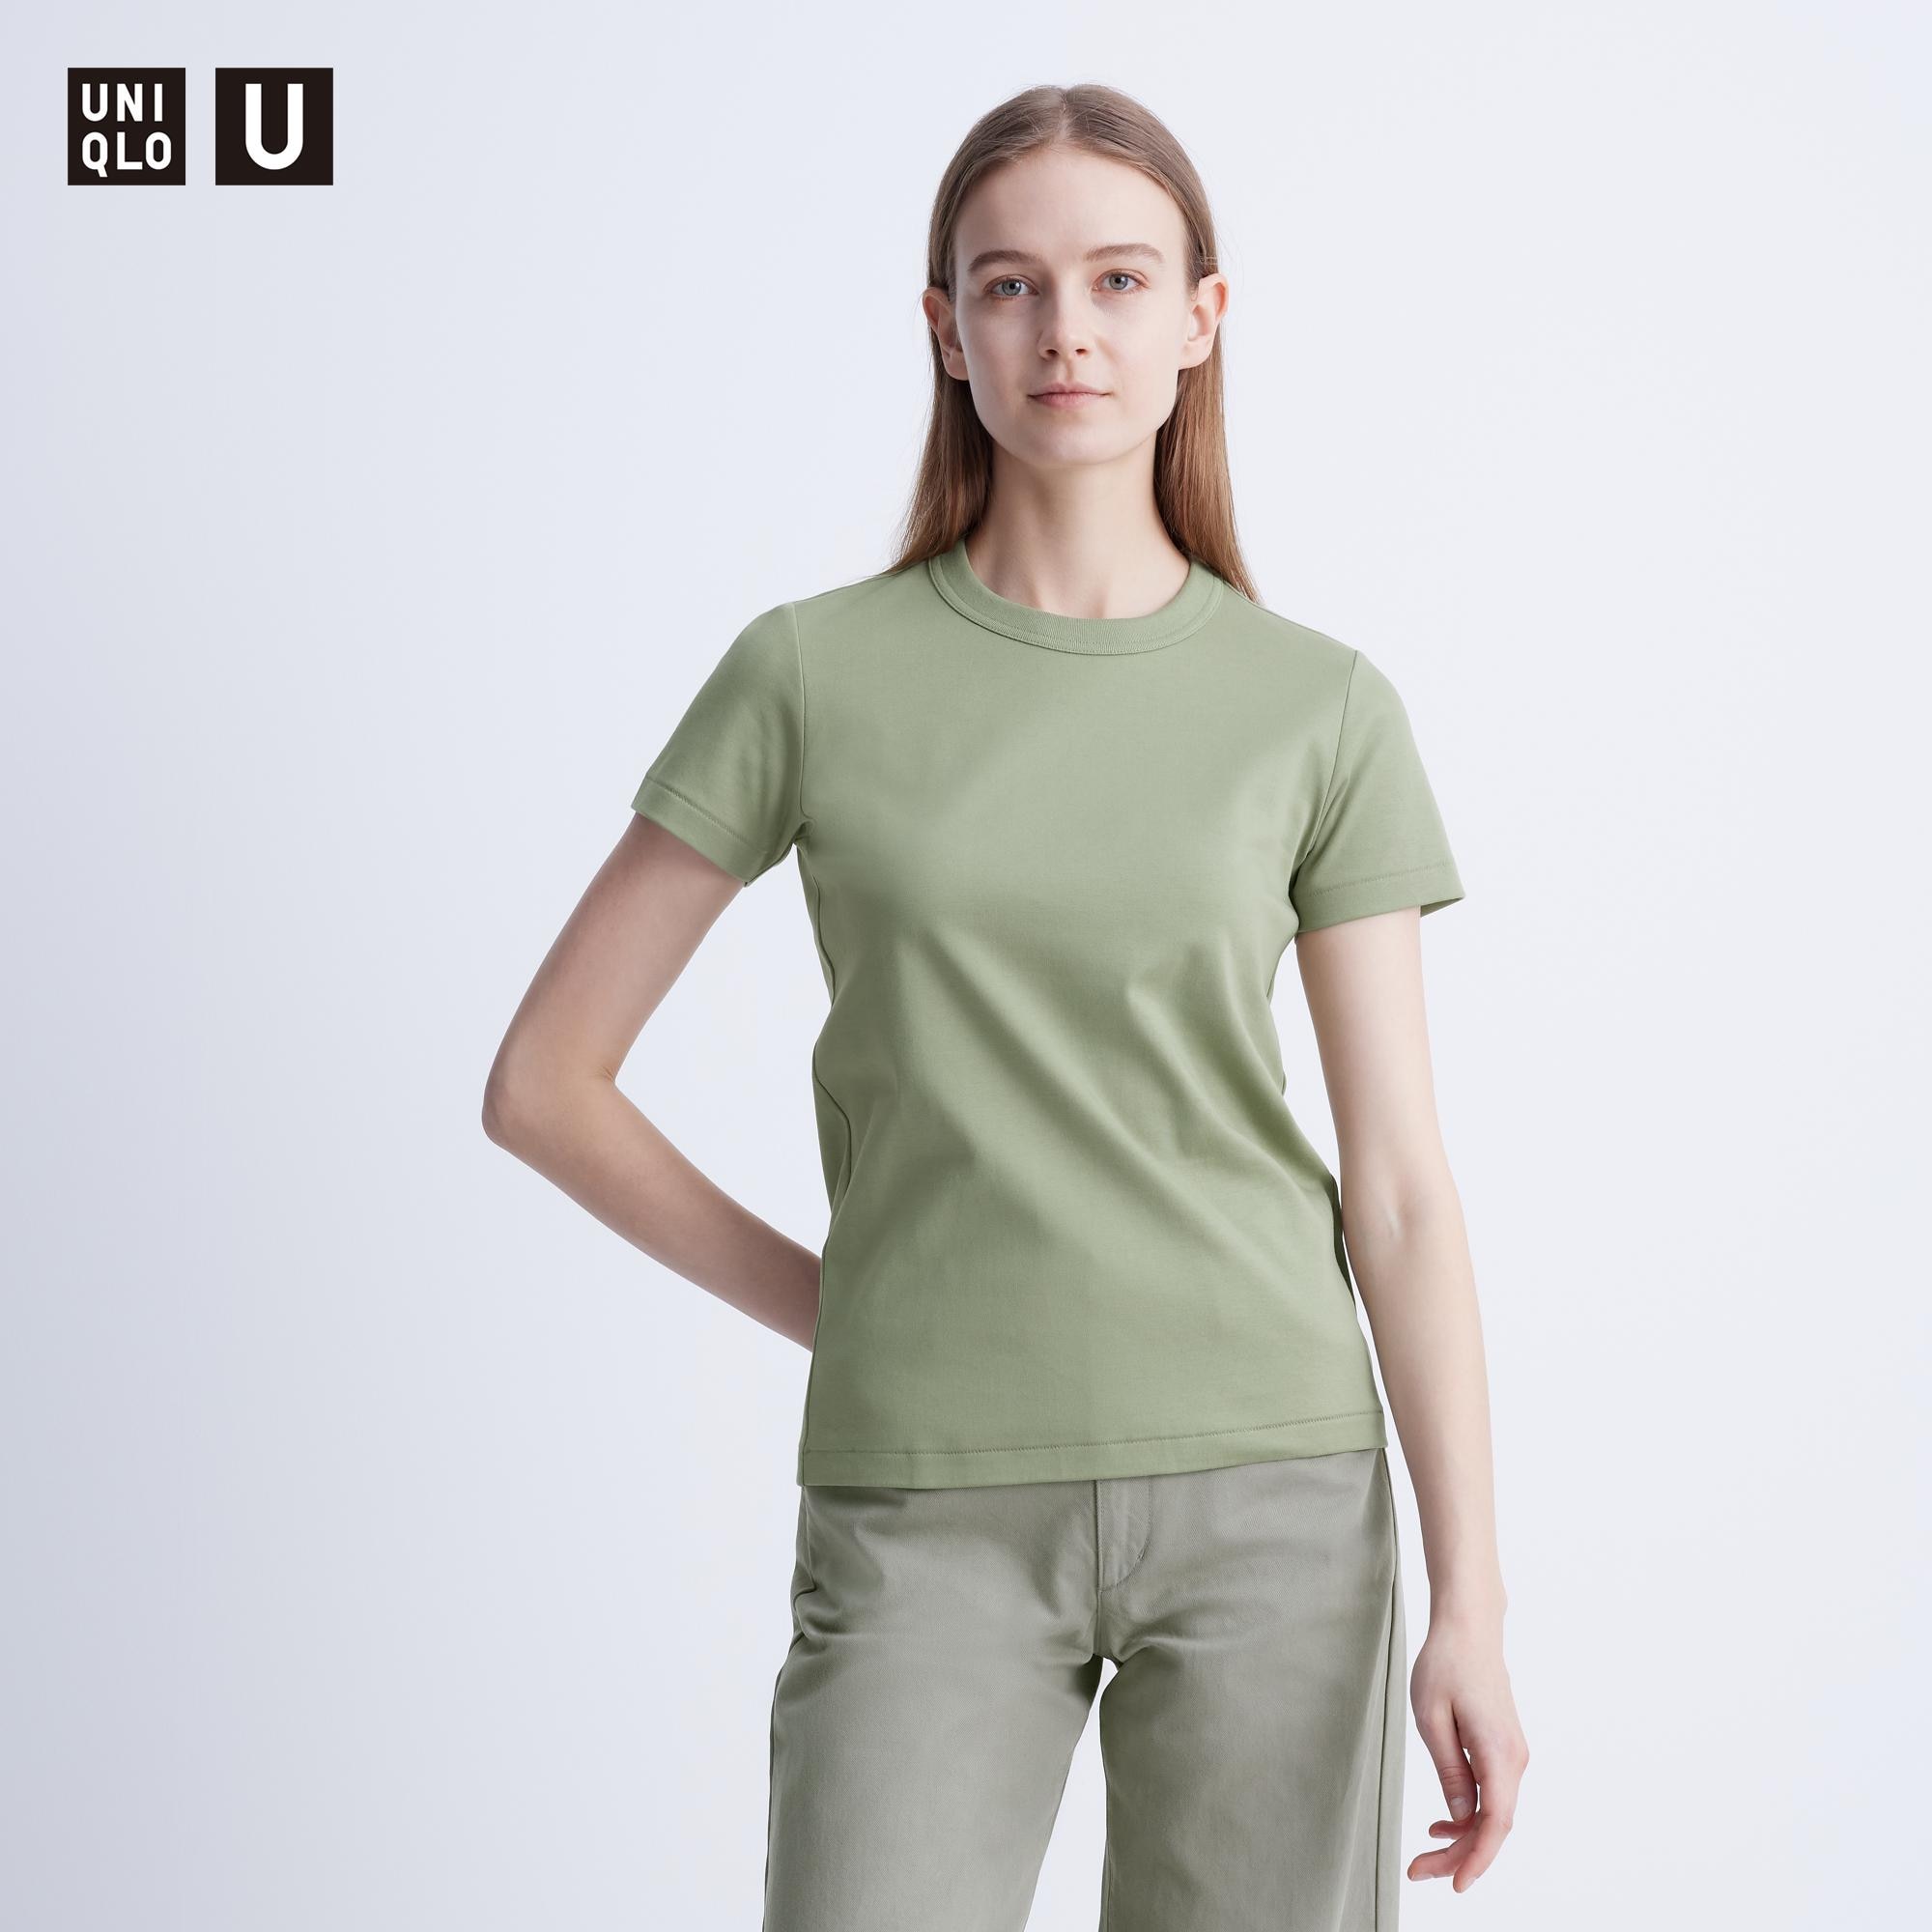 シースルーtシャツ インナーの関連商品 | ユニクロ